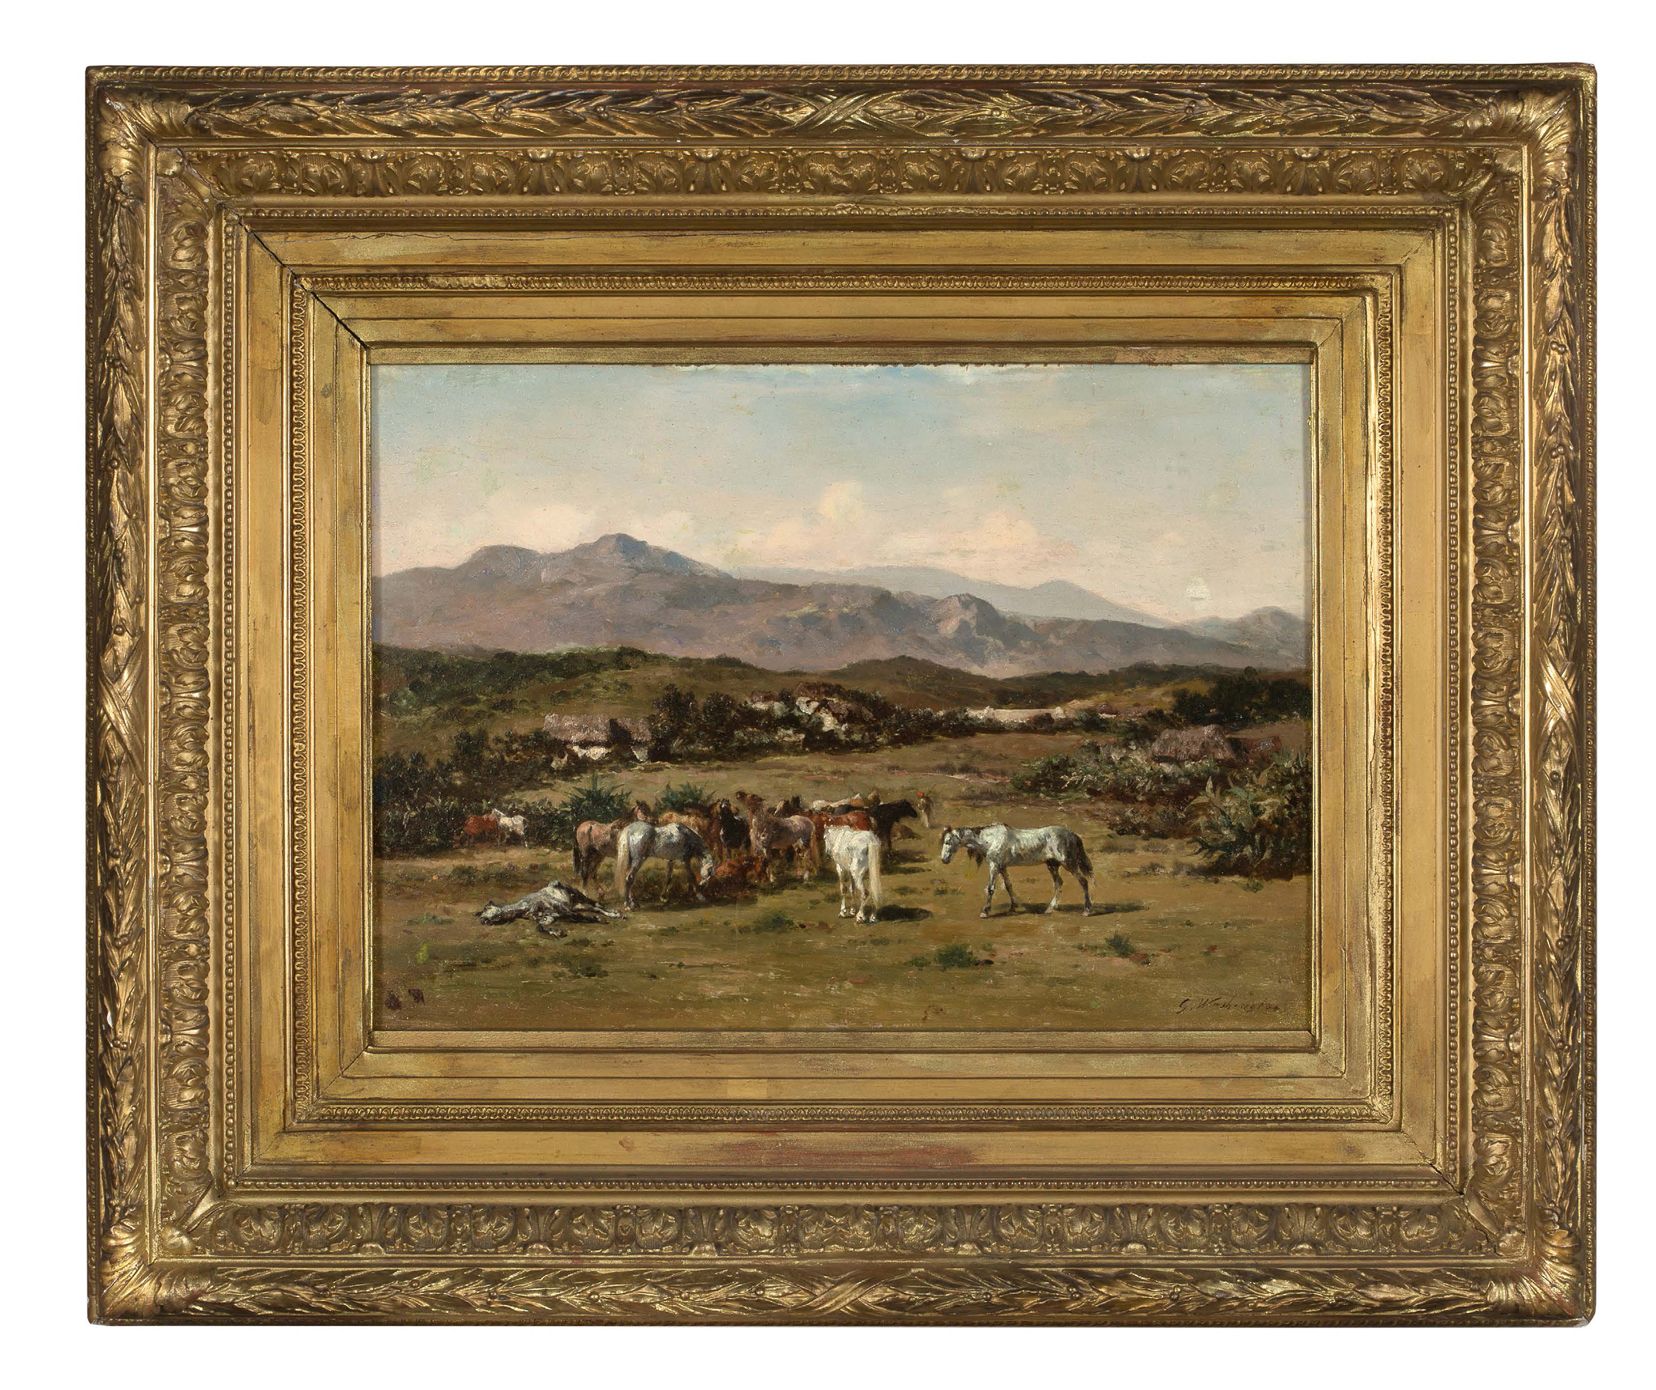 GEORGES WASHINGTON (1827 - 1901) 
Caballos árabes en un prado

Óleo sobre tabla
&hellip;